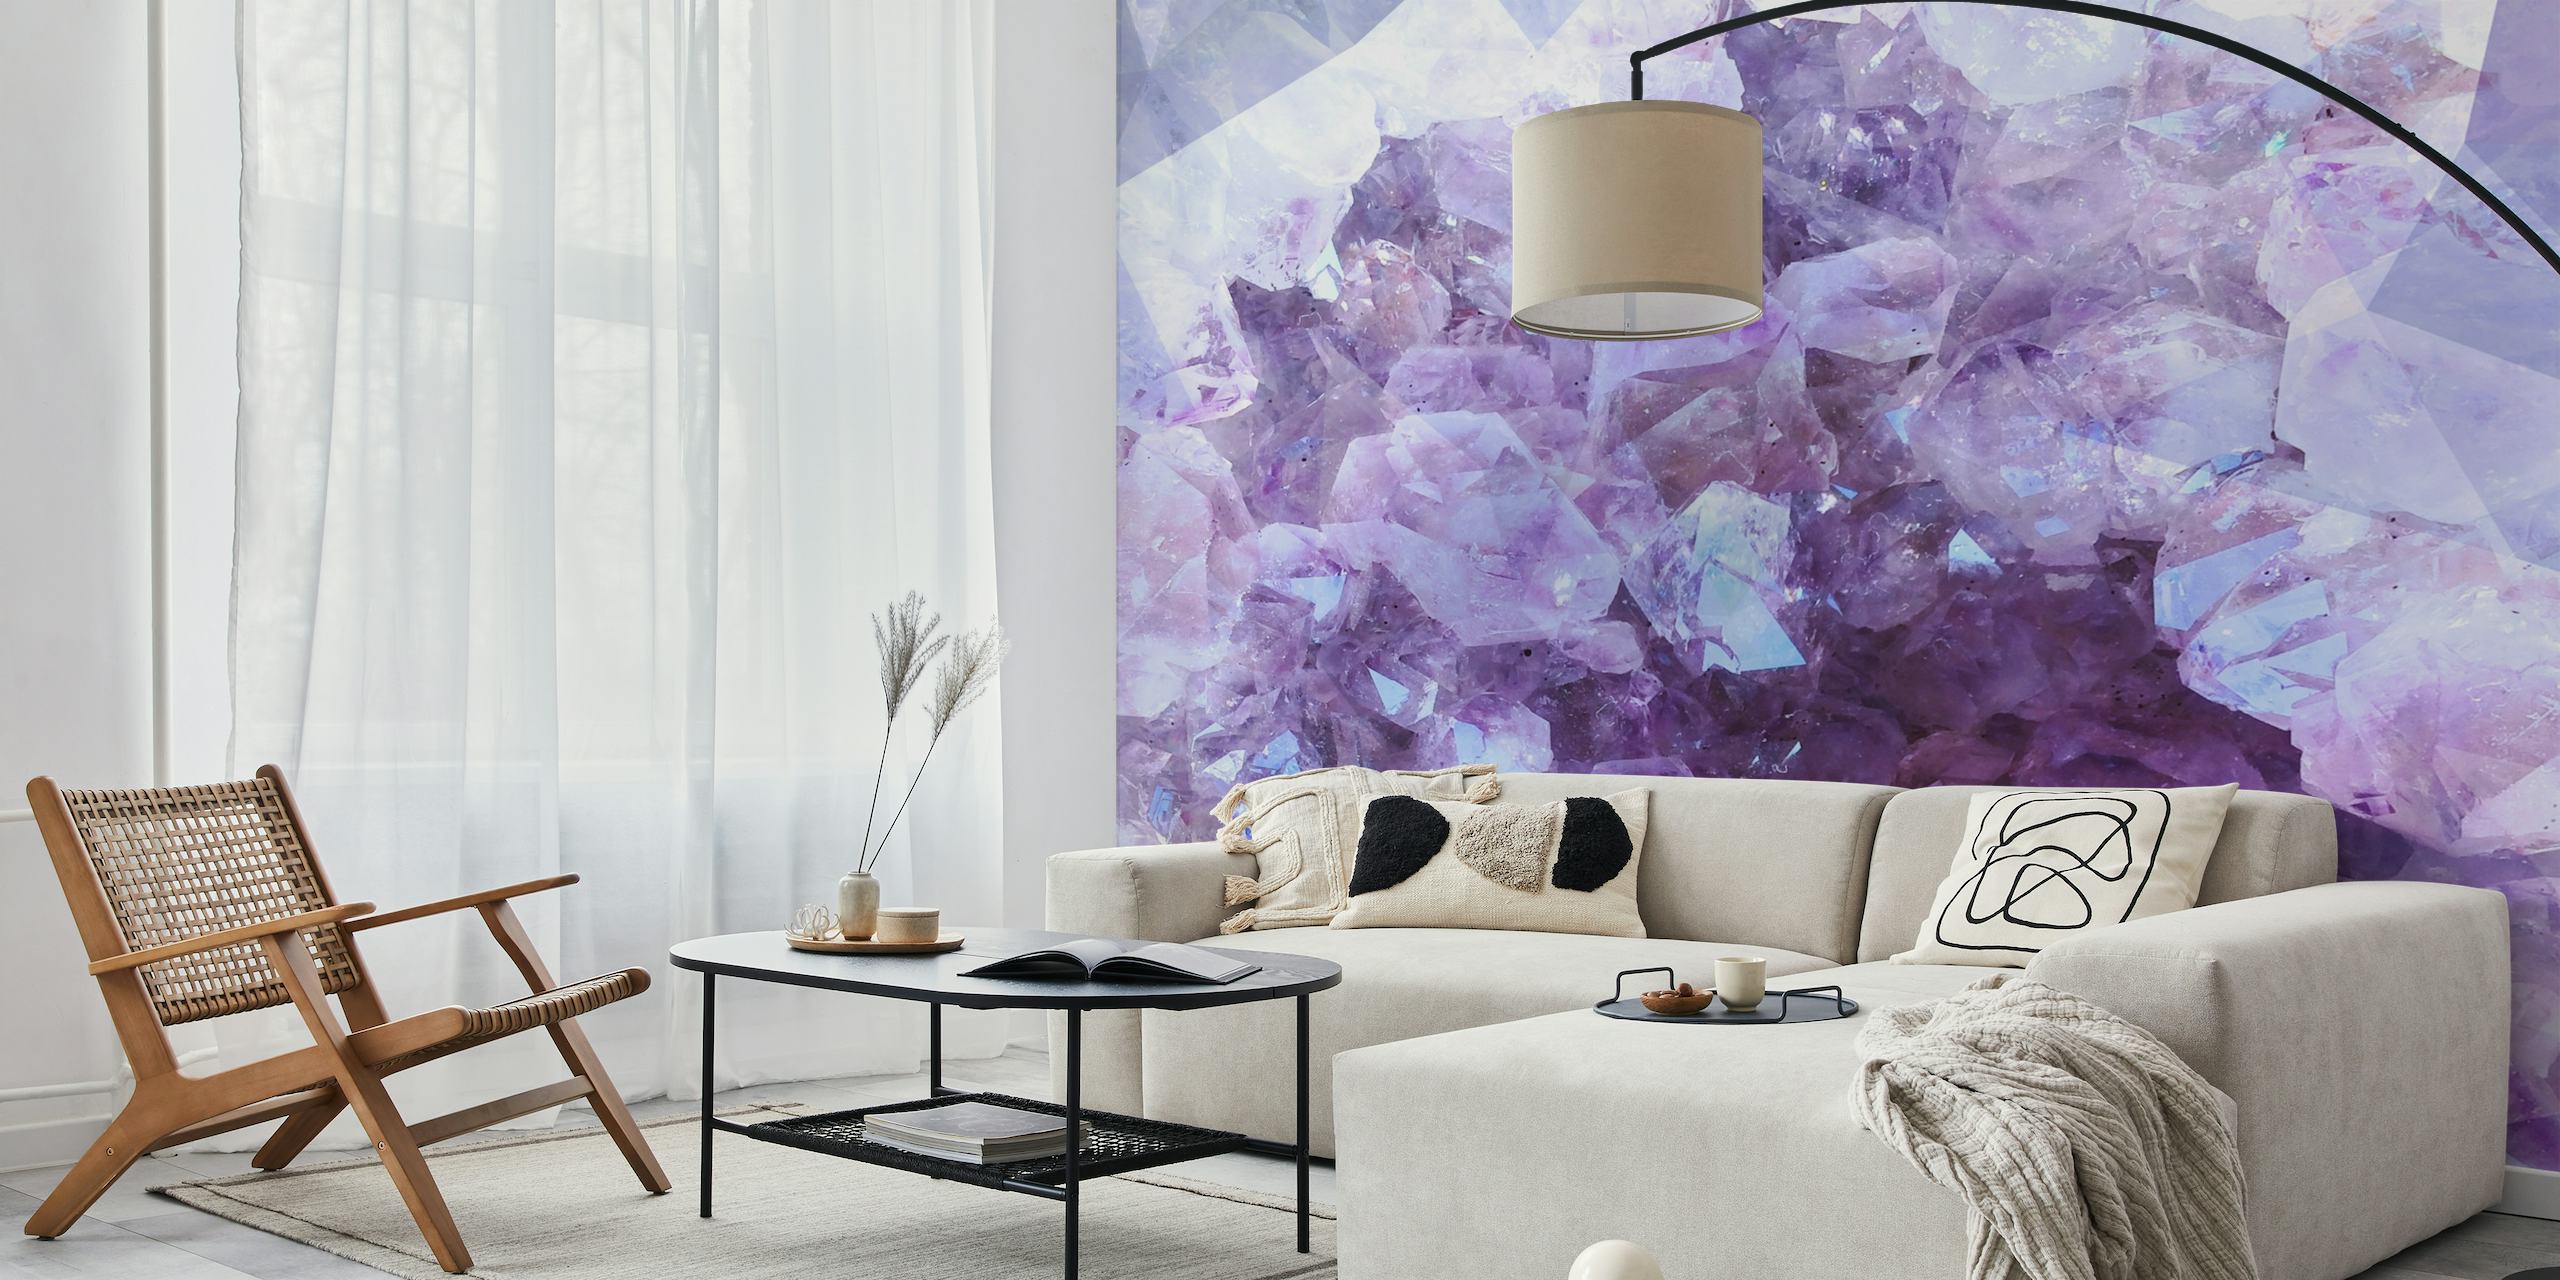 Vægmaleri med ultraviolette krystaller med nuancer af lilla, hvid og blå, der ligner naturlige ametystklynger.